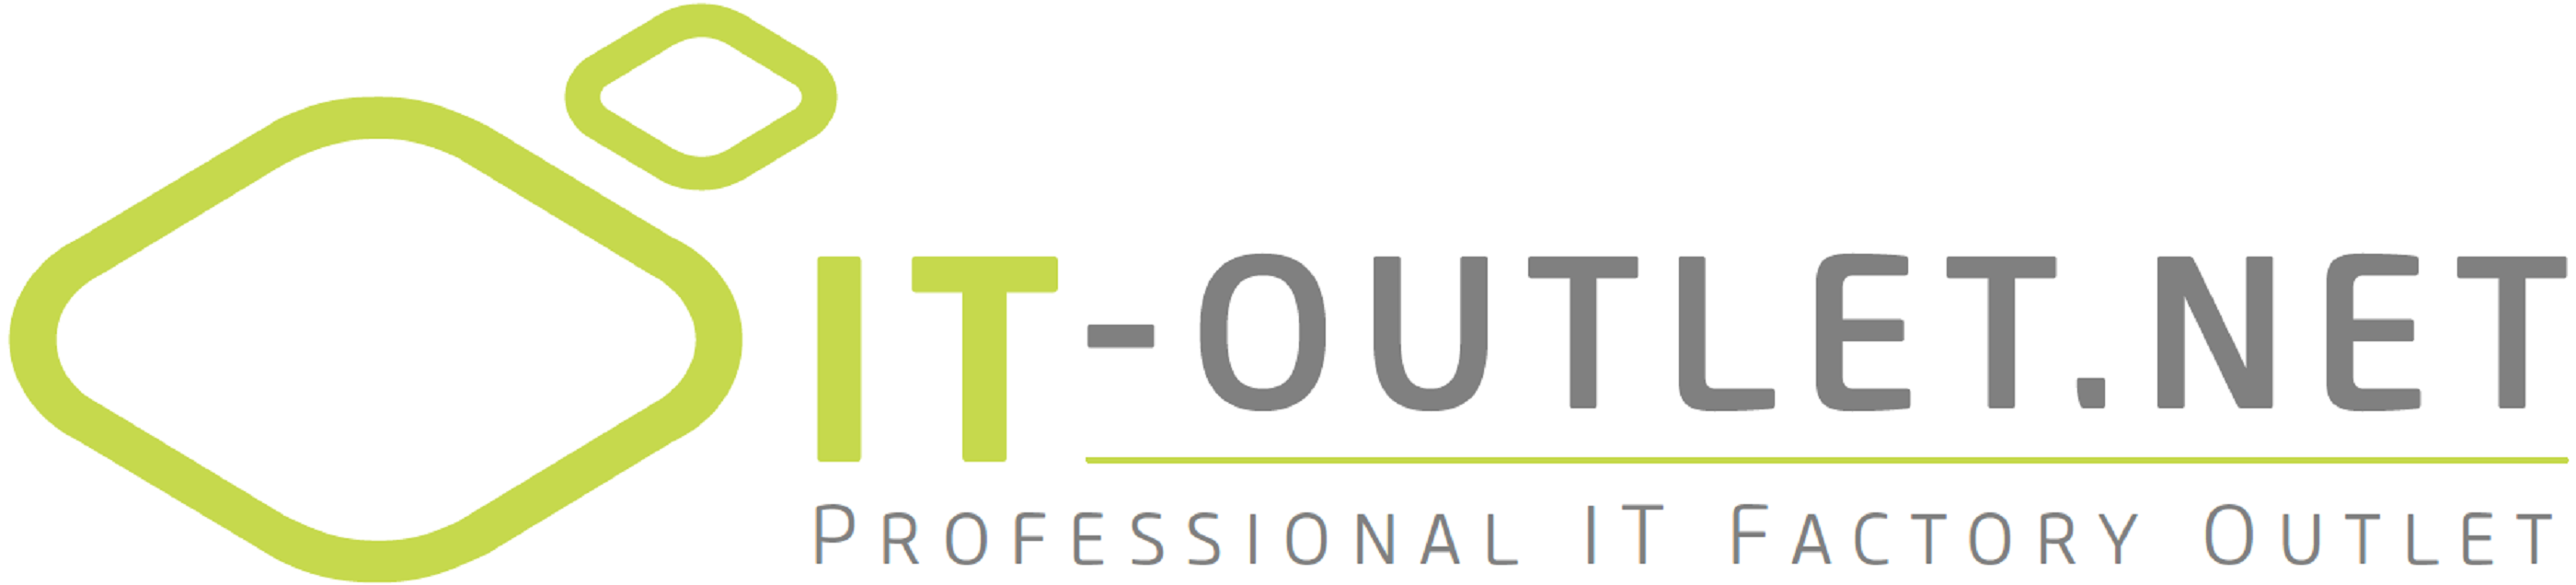 IT-Outlet.net - Logo